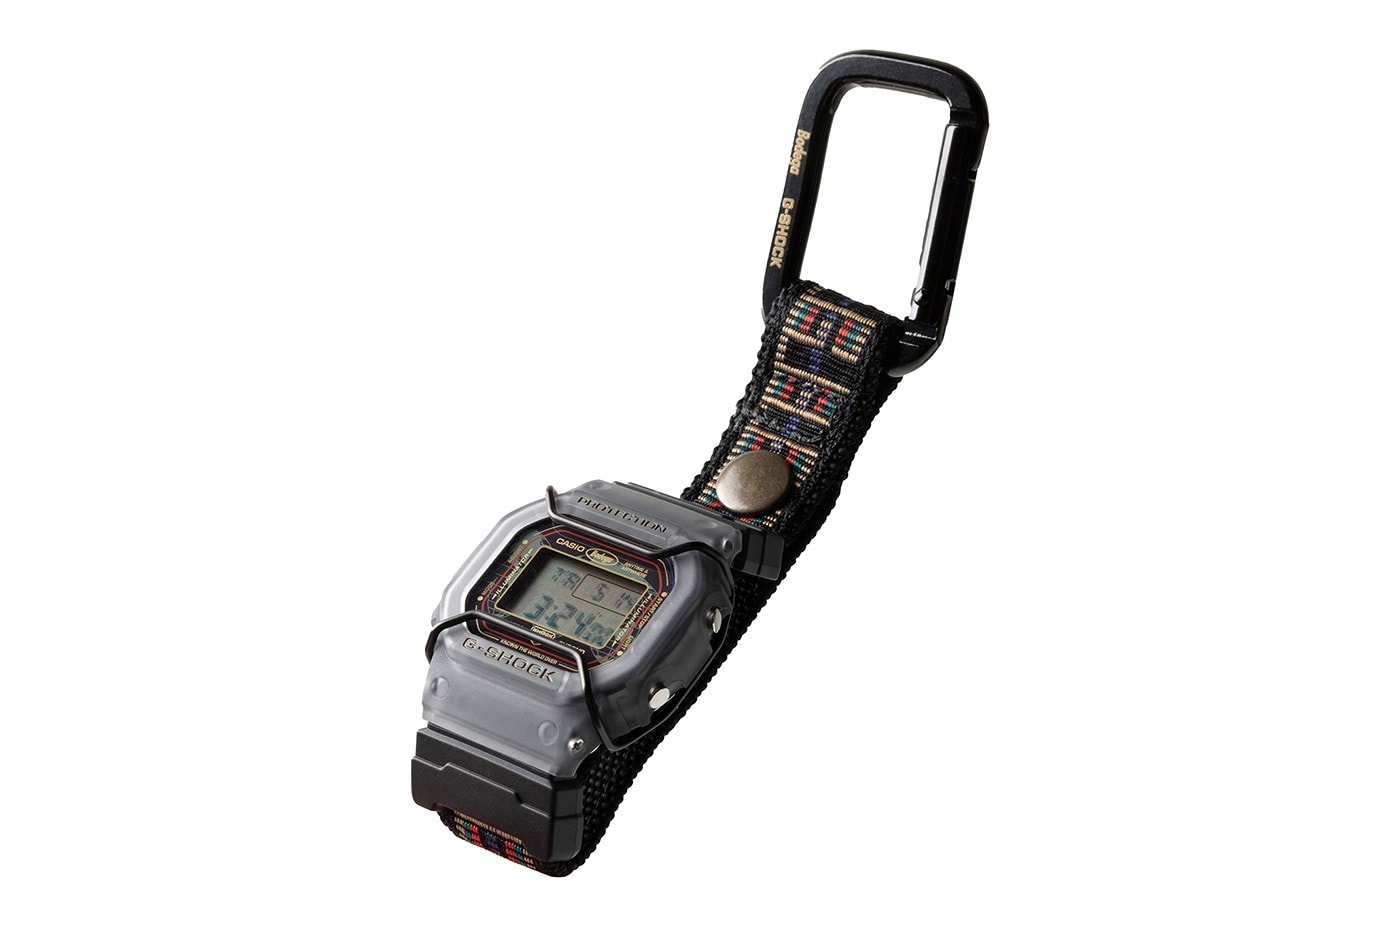 Bodega x G-Shock DW-5600 全新聯名錶款正式發佈